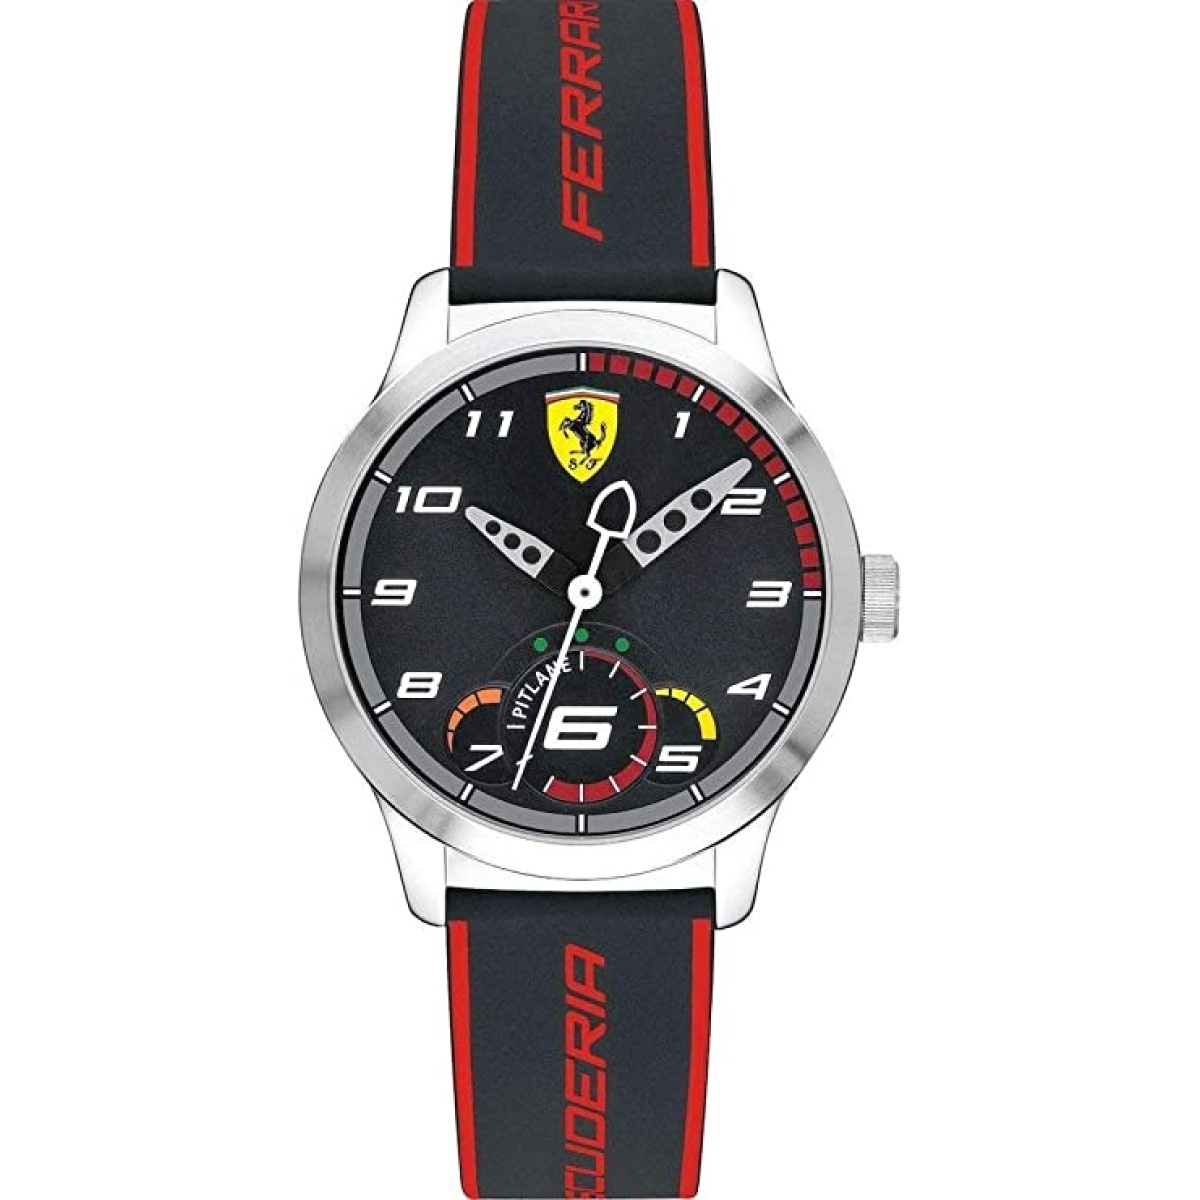 Orologio da polso Ferrari PITLANE - 0860003